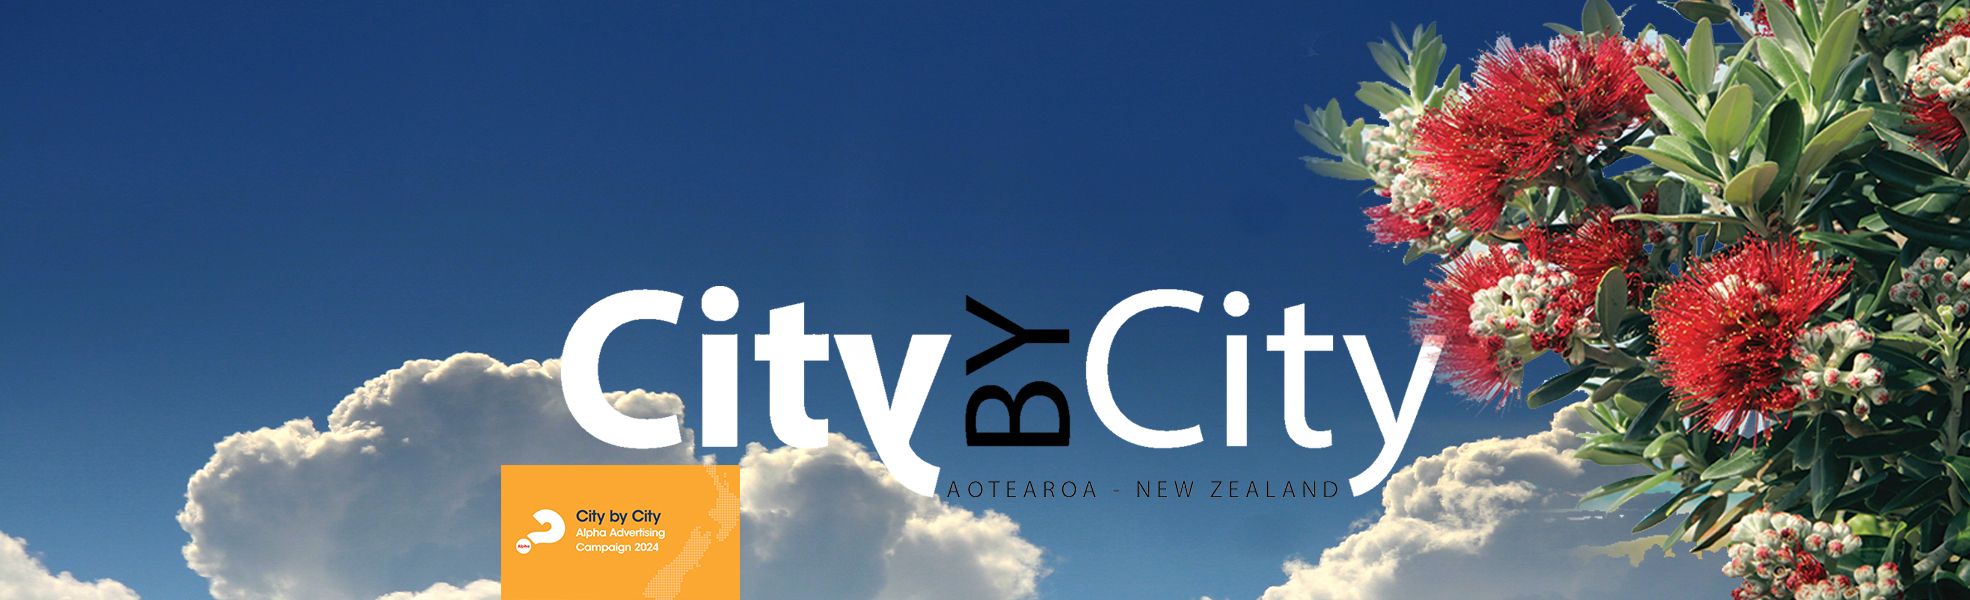 jpeg optimizer CitybyCity 1970x600 clouds Pohutakawa6